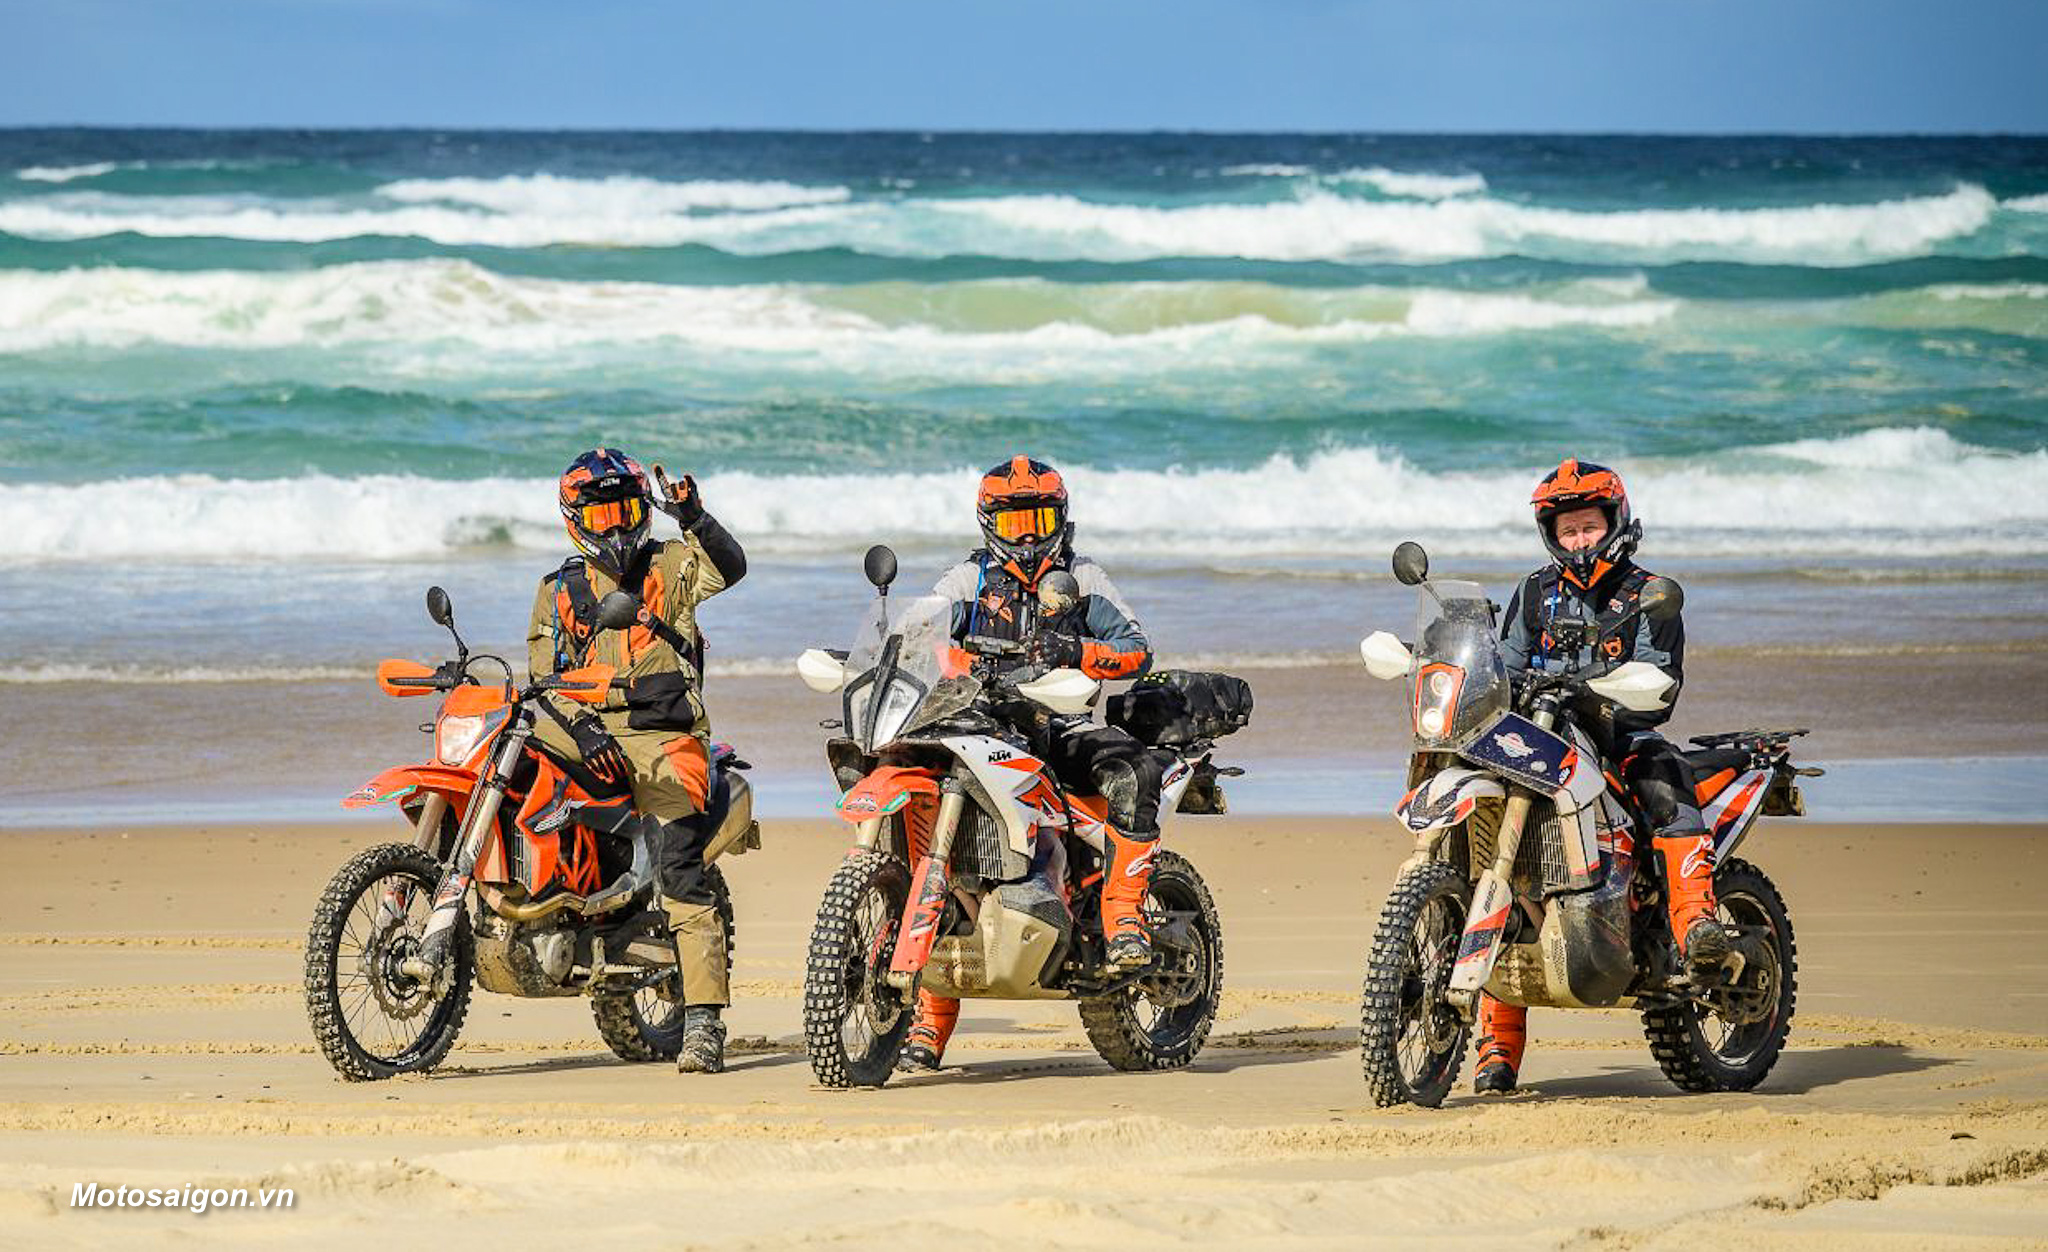 Toàn cảnh chuyến phiêu lưu KTM Australia Adventure Rallye tại Úc High Country